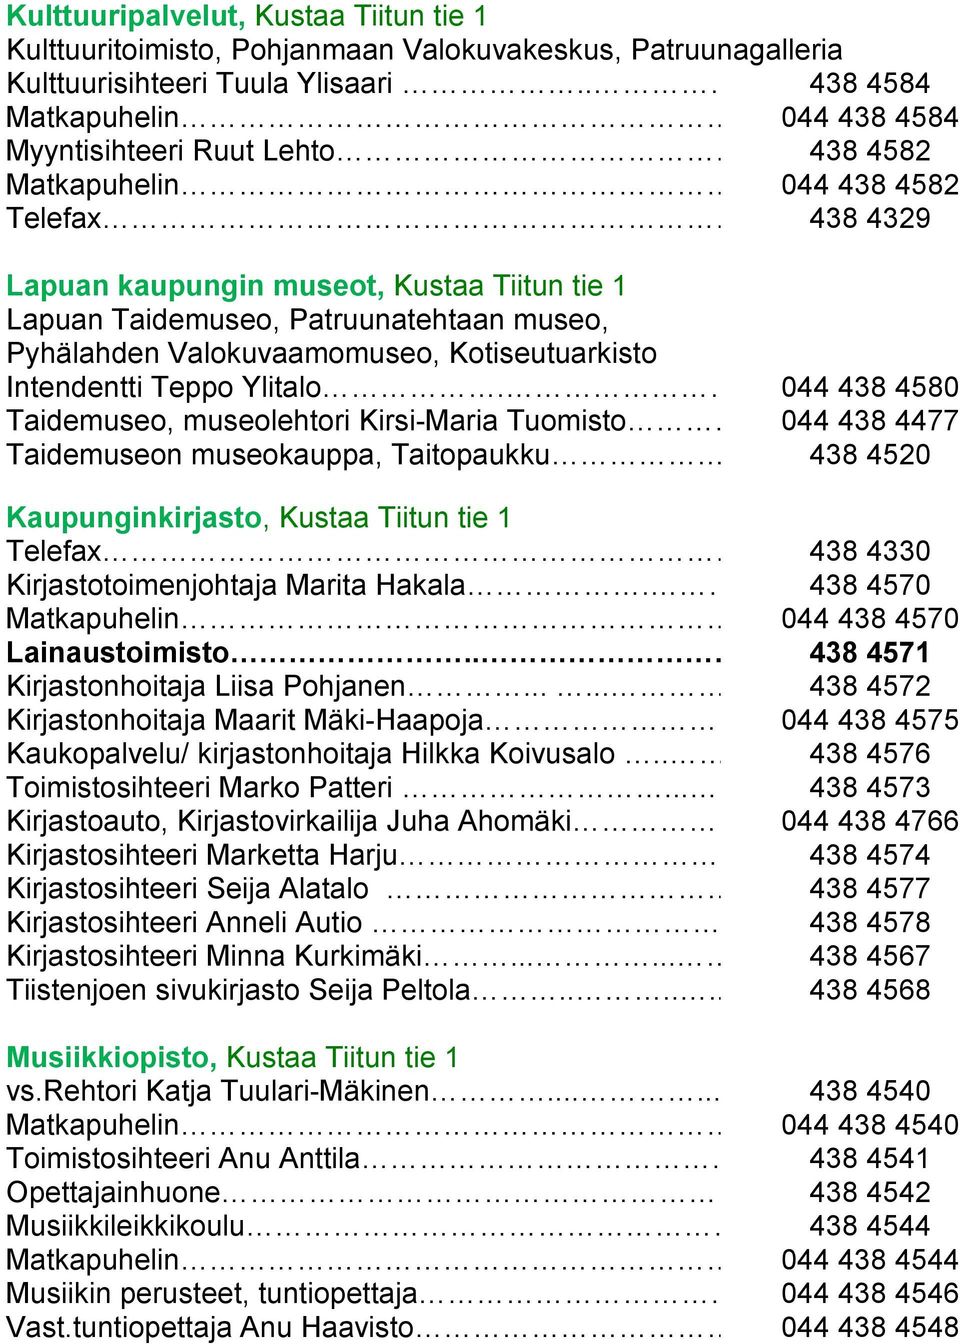 .... 438 4329 Lapuan kaupungin museot, Kustaa Tiitun tie 1 Lapuan Taidemuseo, Patruunatehtaan museo, Pyhälahden Valokuvaamomuseo, Kotiseutuarkisto Intendentti Teppo Ylitalo.